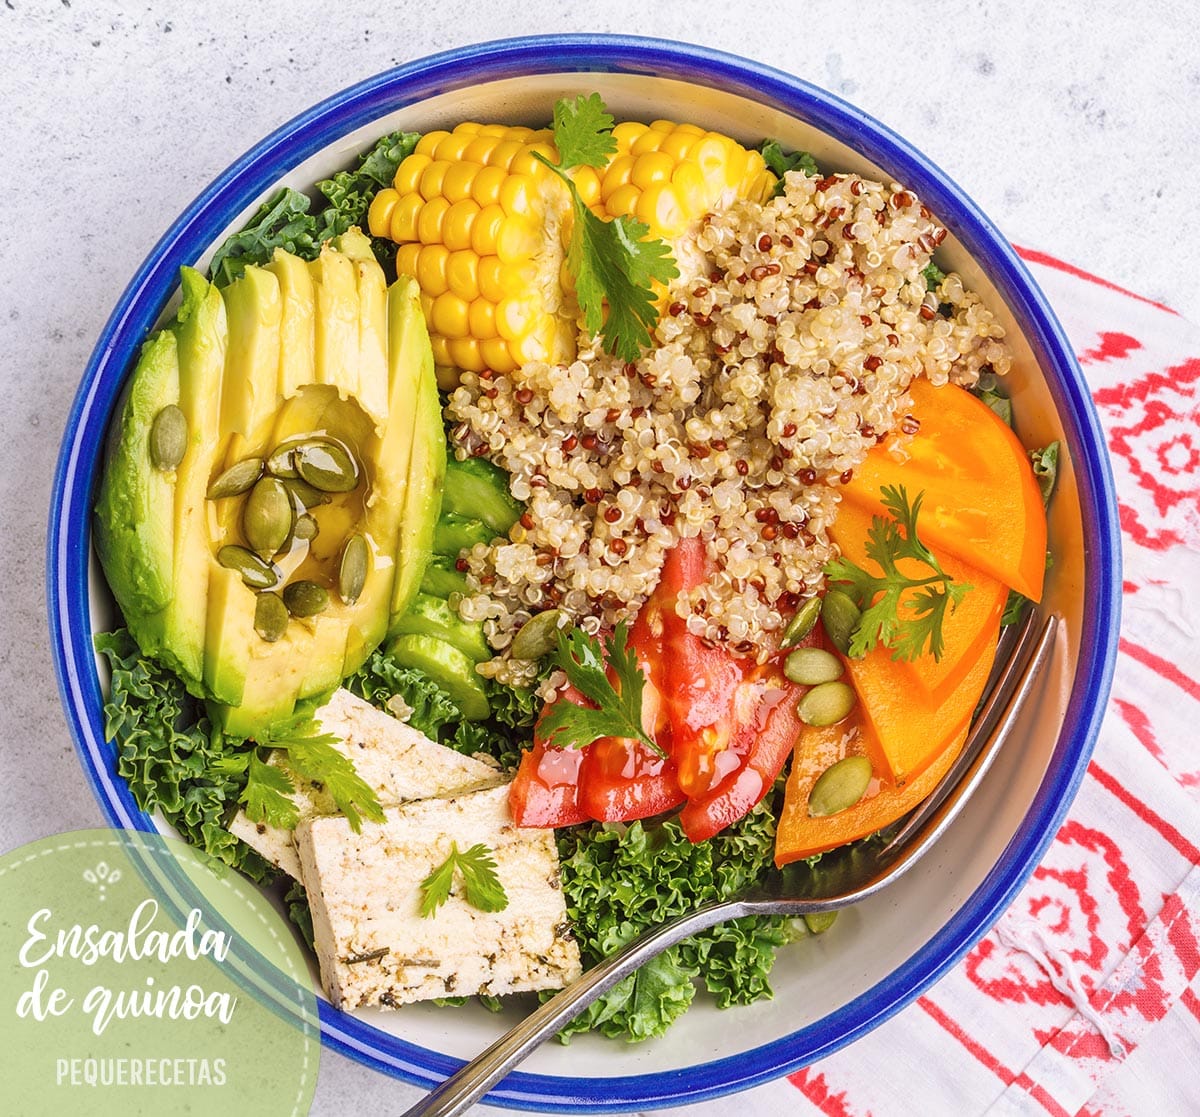 Ensalada de QUINOA (8 recetas de ensaladas con quinoa fáciles y sanas) -  PequeRecetas